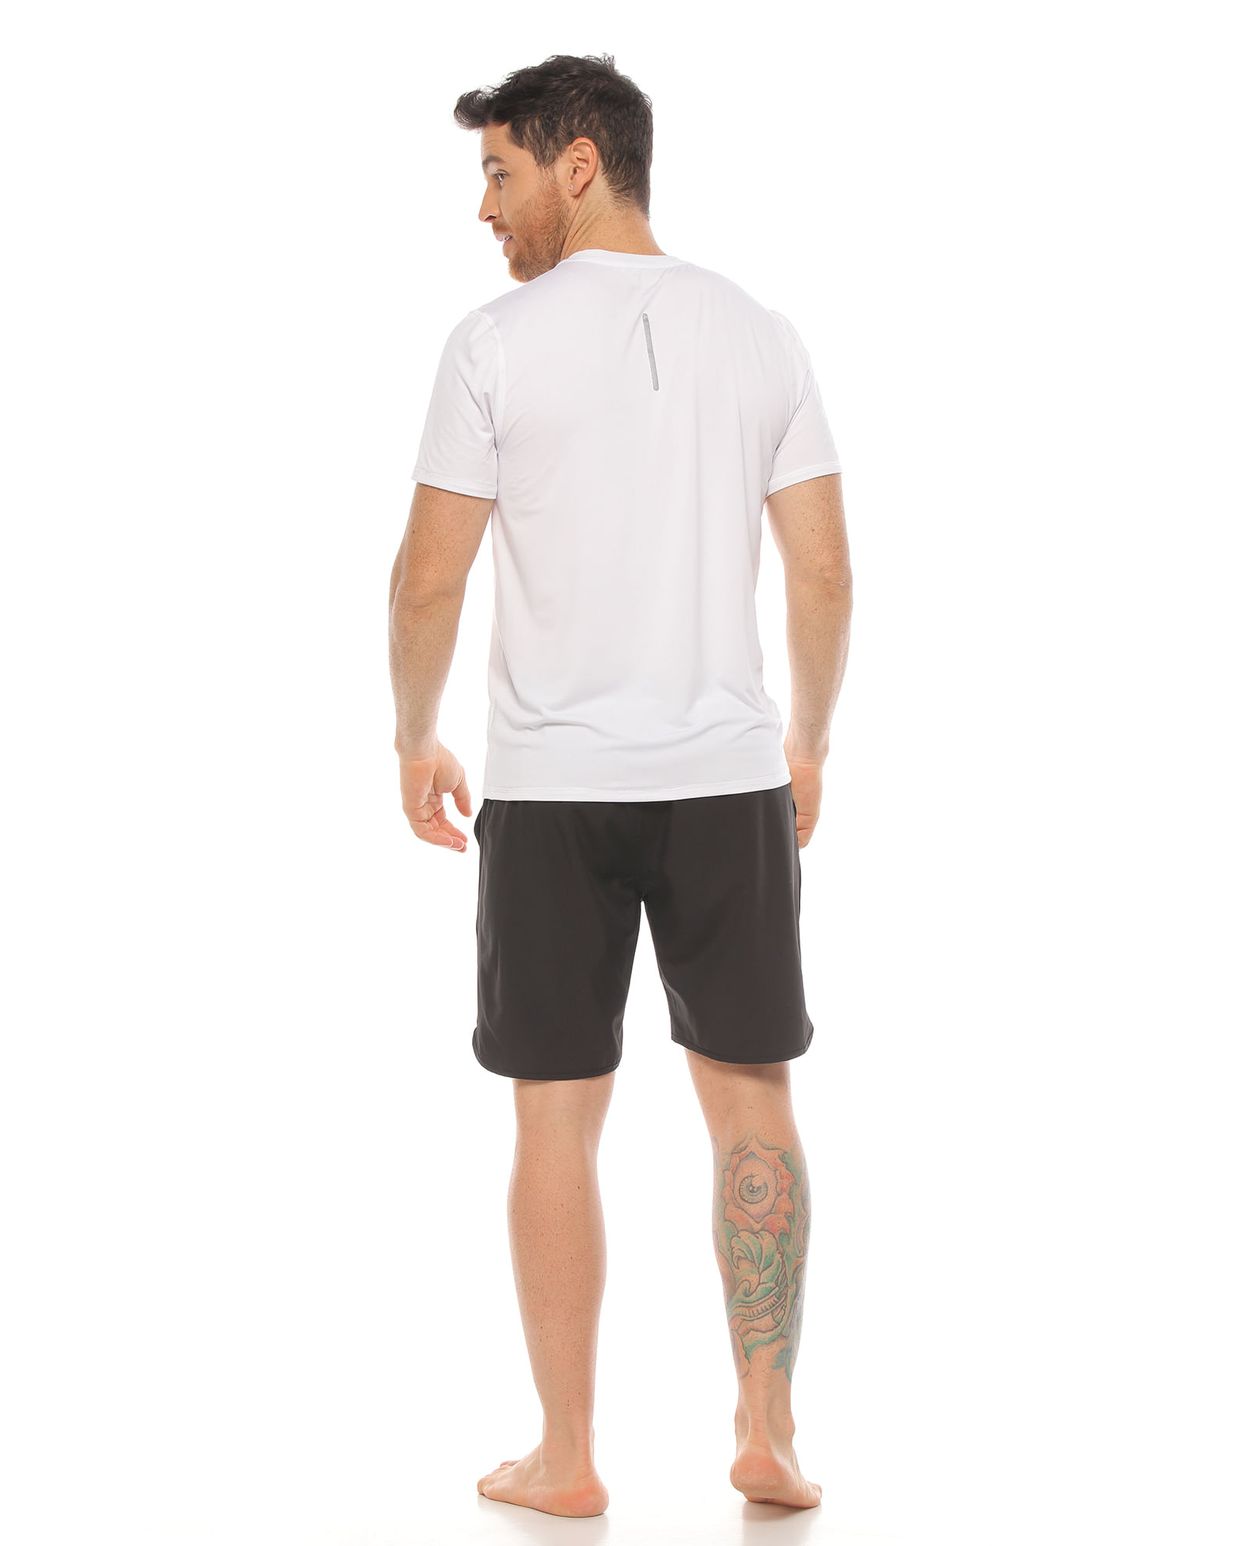 modelo con pantaloneta deportiva color negro y camiseta deportiva color blanco cuerpo completo parte trasera